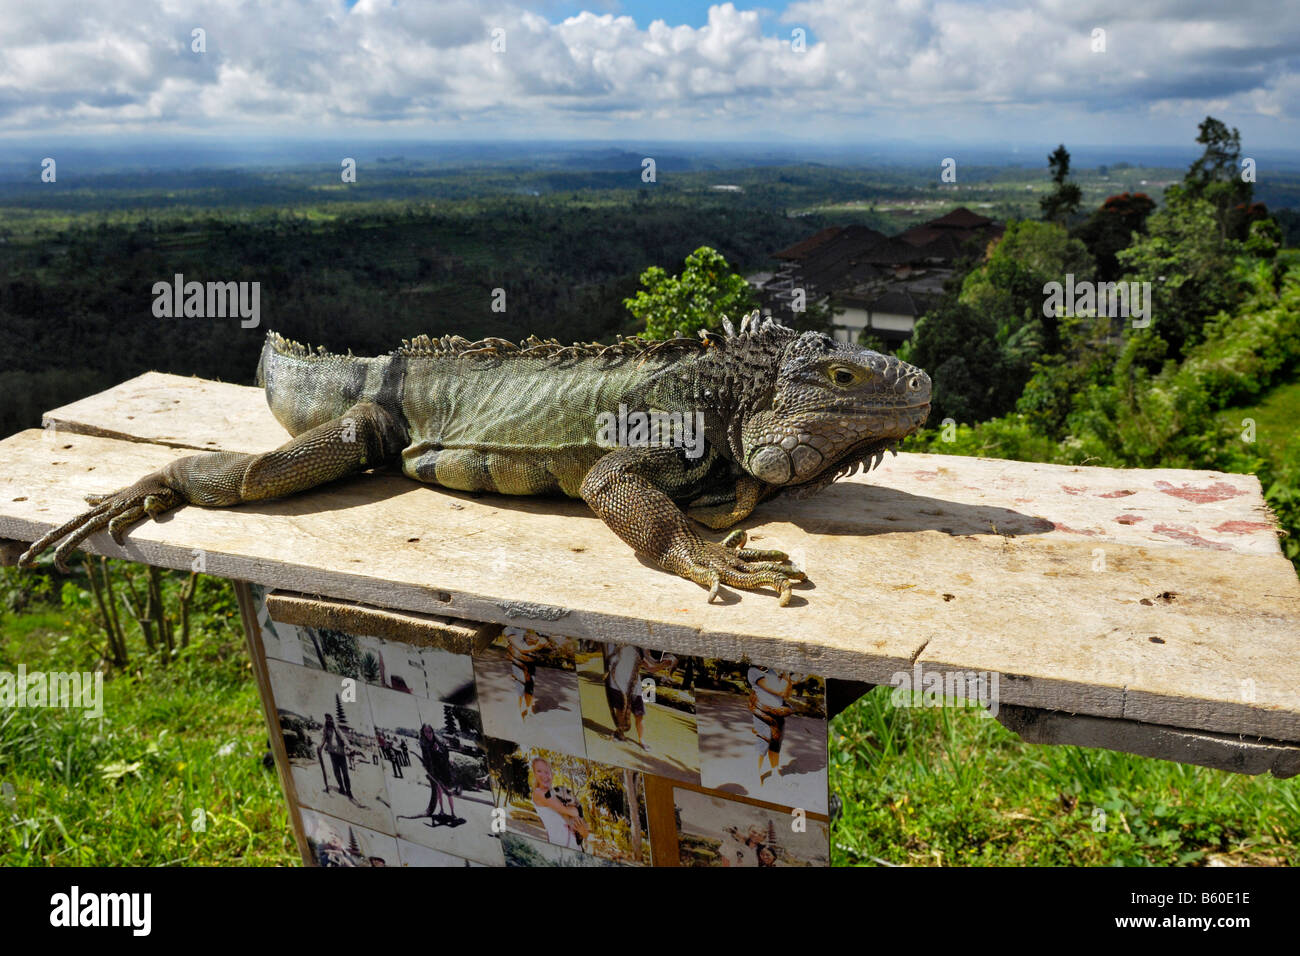 Iguana (Leguane) in der Nähe von Bedugul, Bali, Indonesien Stockfoto